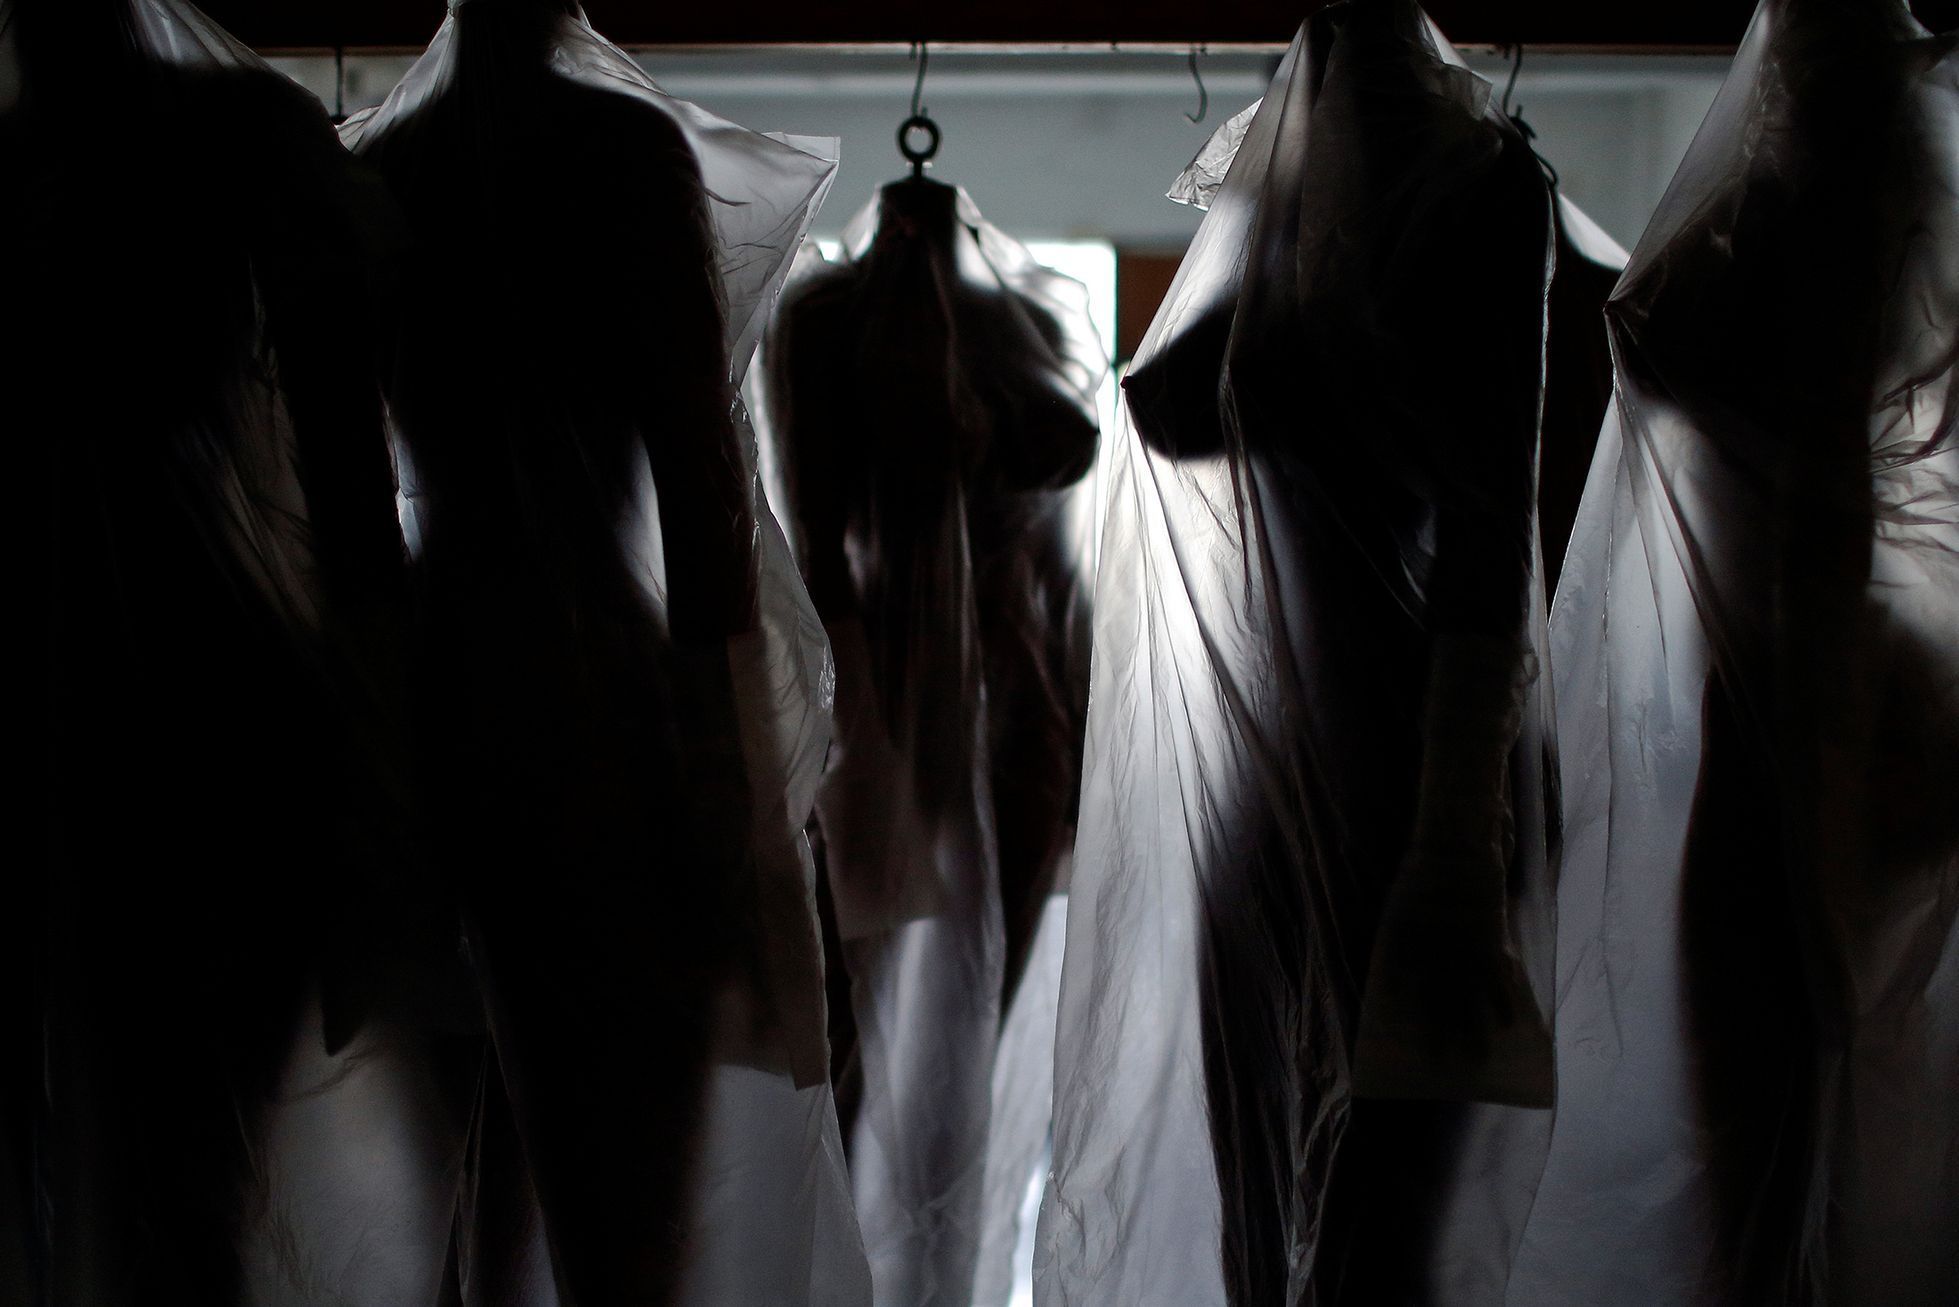 Fotogalerie / Tak se v Číně vyrábějí sexuální roboti / Reuters / 5